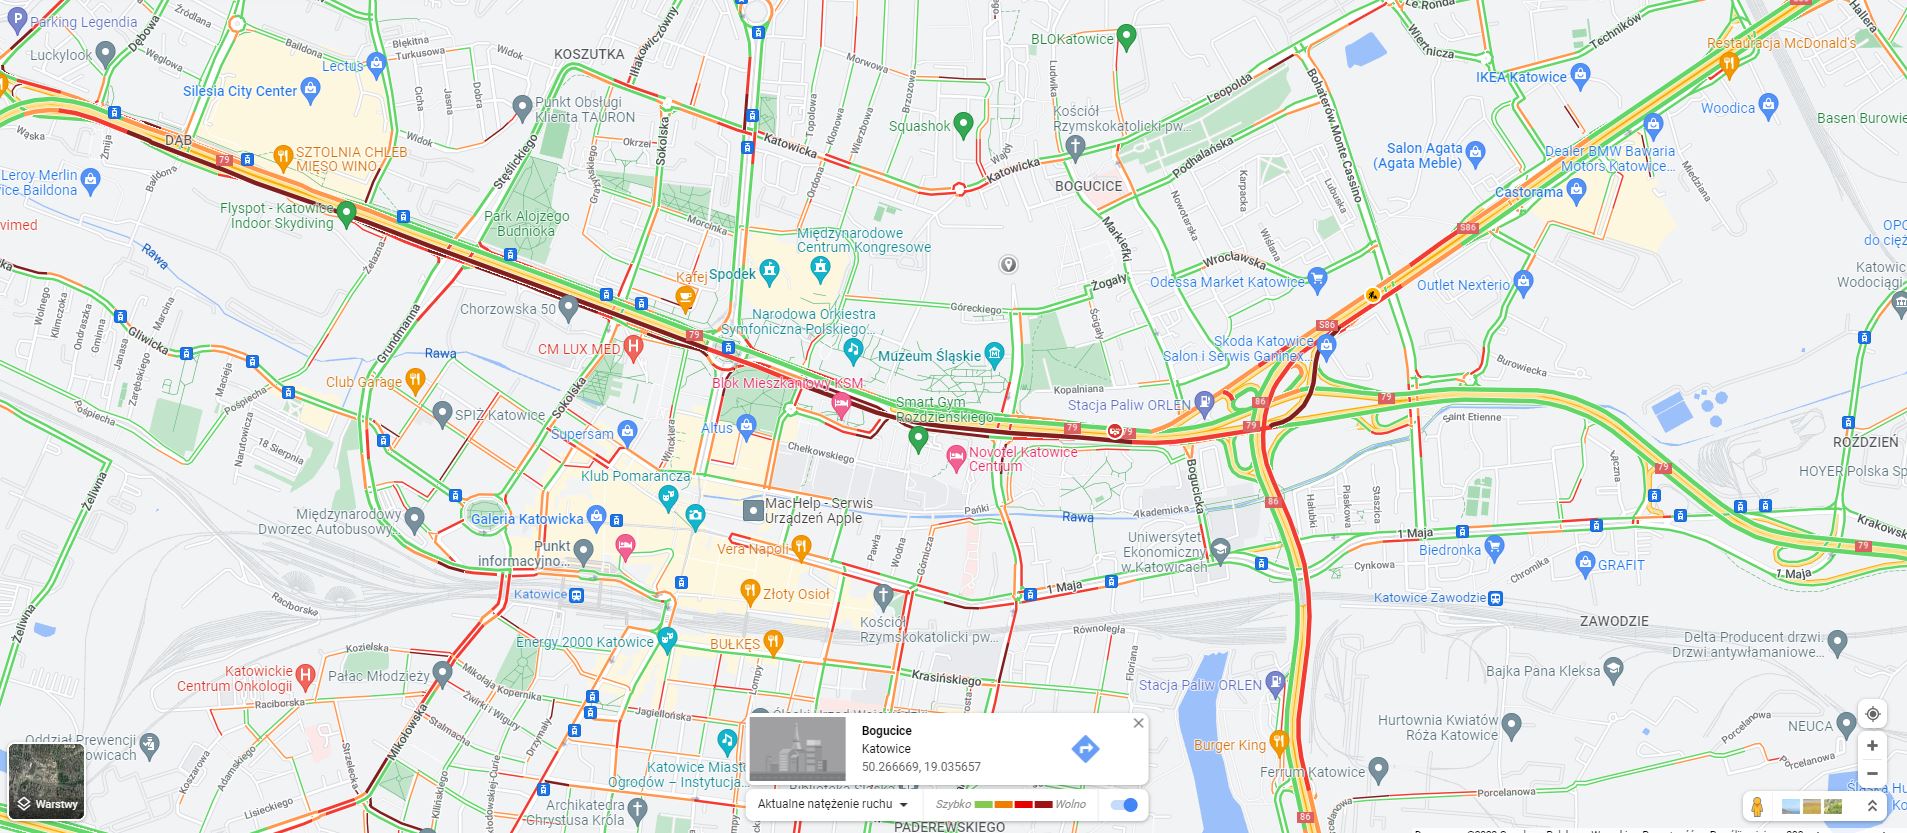 Fot. Google Maps. Korki w centrum Katowic 2 marca o godz. 15:15 - tunel został zamknięty